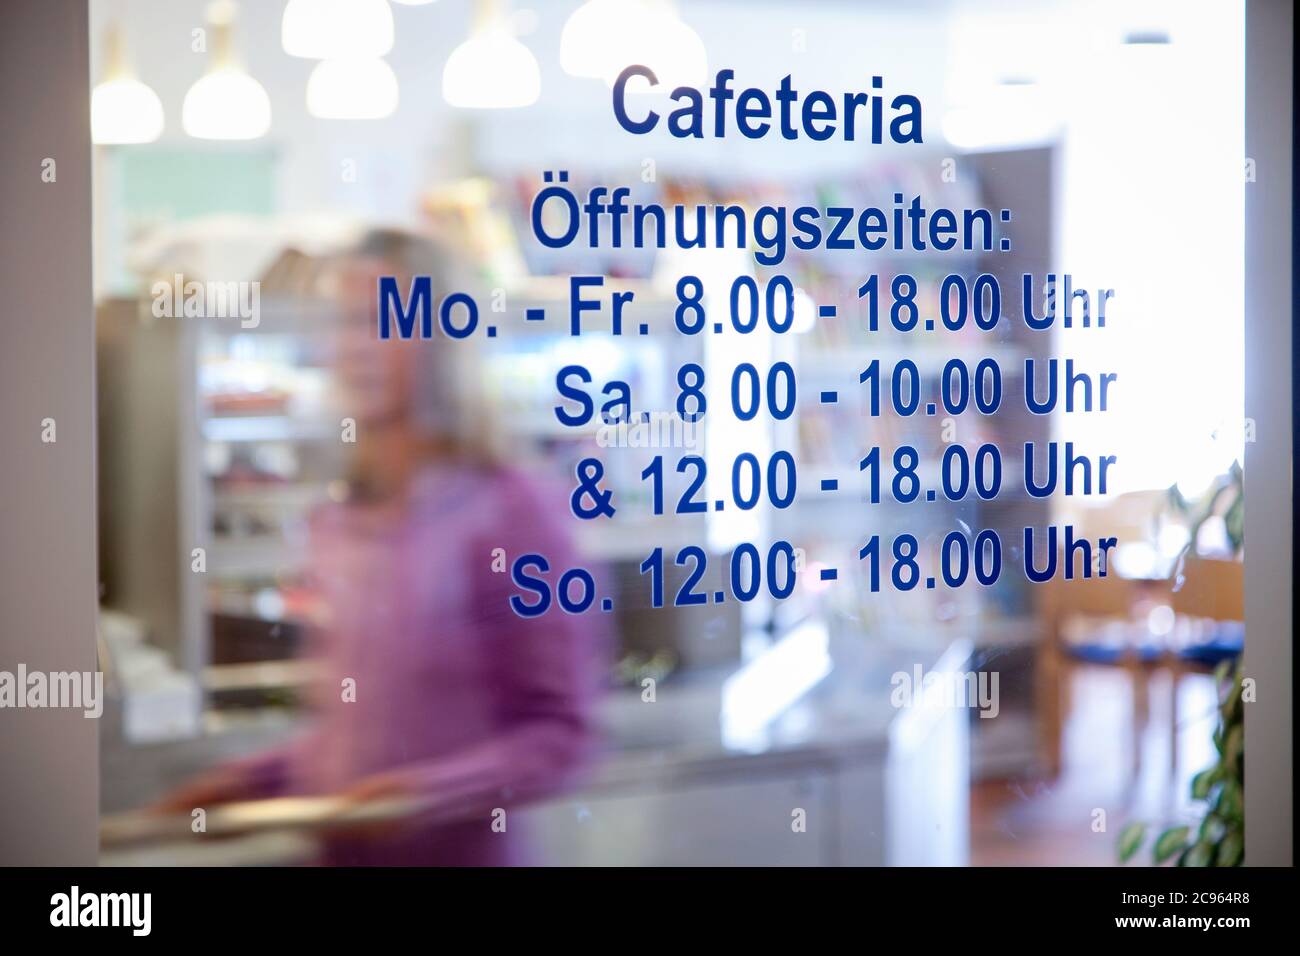 Essen, Nordrhein-Westfalen, Deutschland - Klinikcafeteria. Glastür mit den Öffnungszeiten. Im Hintergrund sind Leute mit Tabletts walki Stockfoto